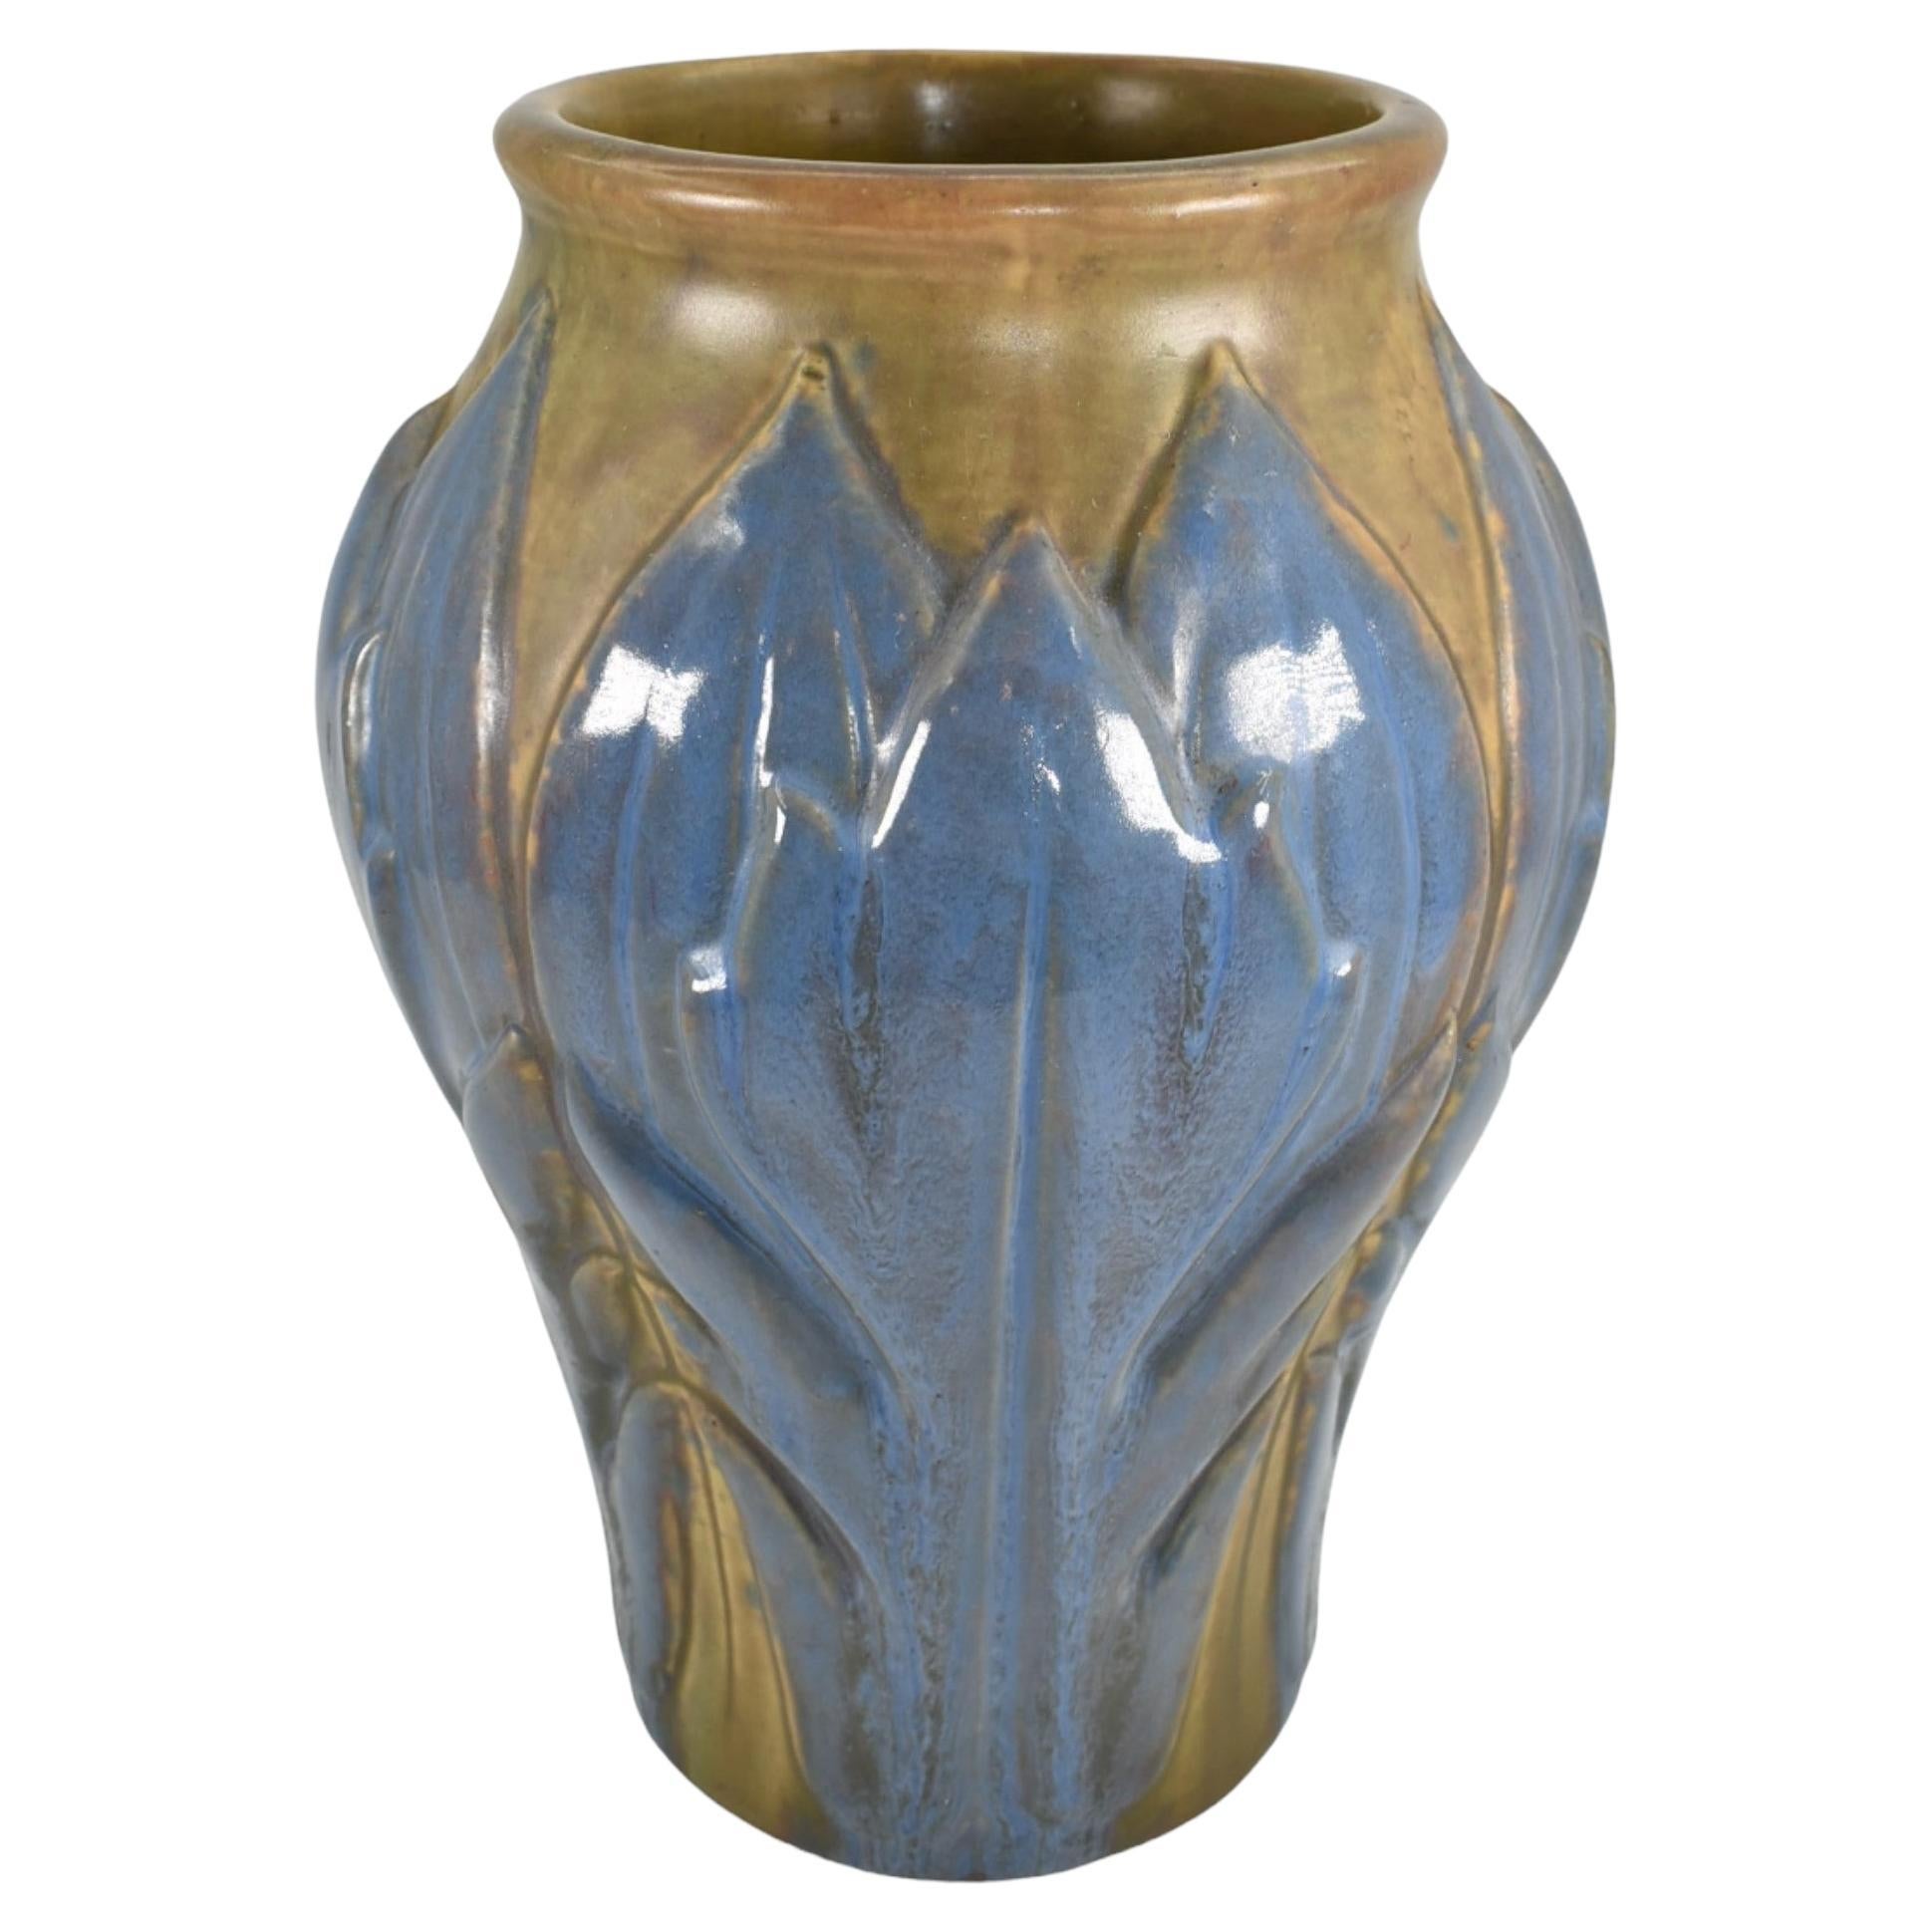 Roseville Early Velmoss Trial Glaze 1916 Vintage Art Pottery Ceramic Vase 135-10